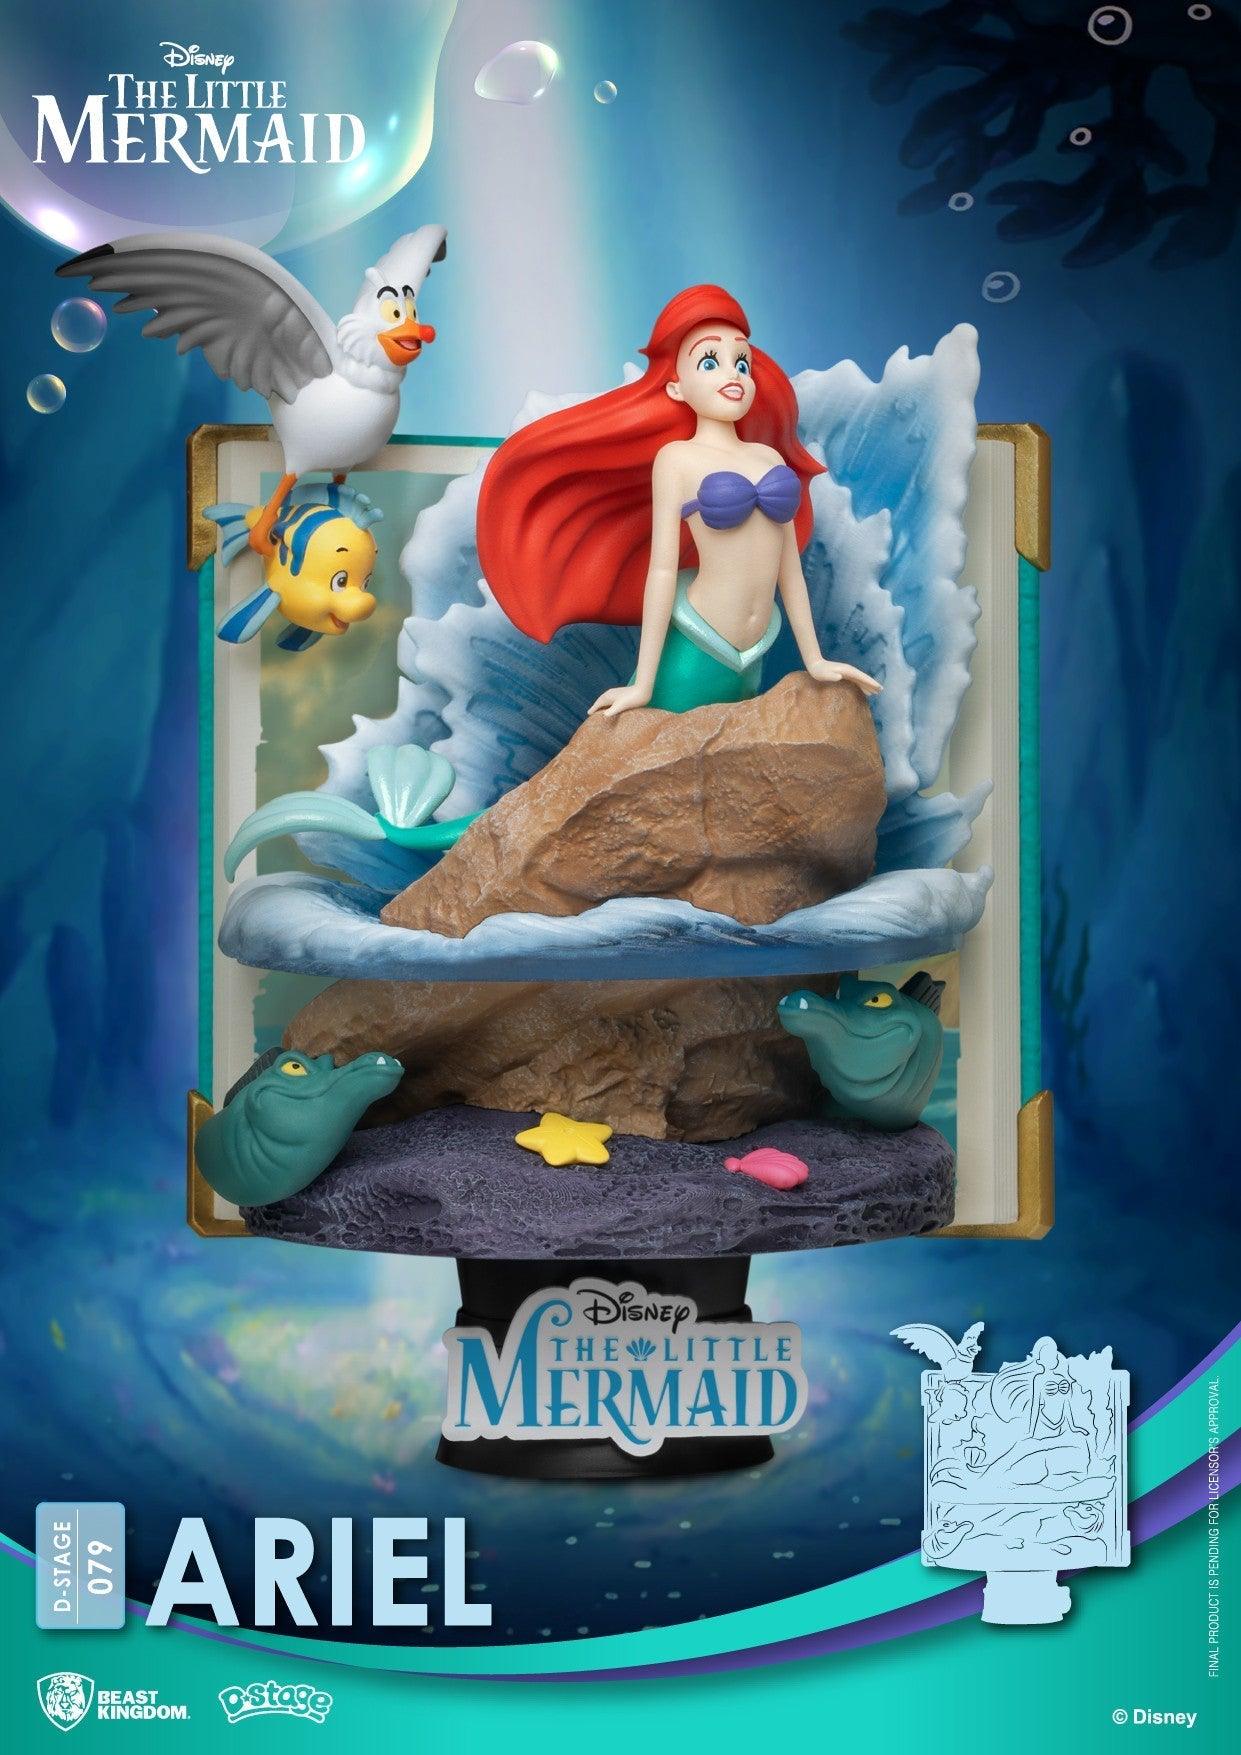 VR-90980 Beast Kingdom D Stage Story Book Series The Little Mermaid Ariel - Beast Kingdom - Titan Pop Culture